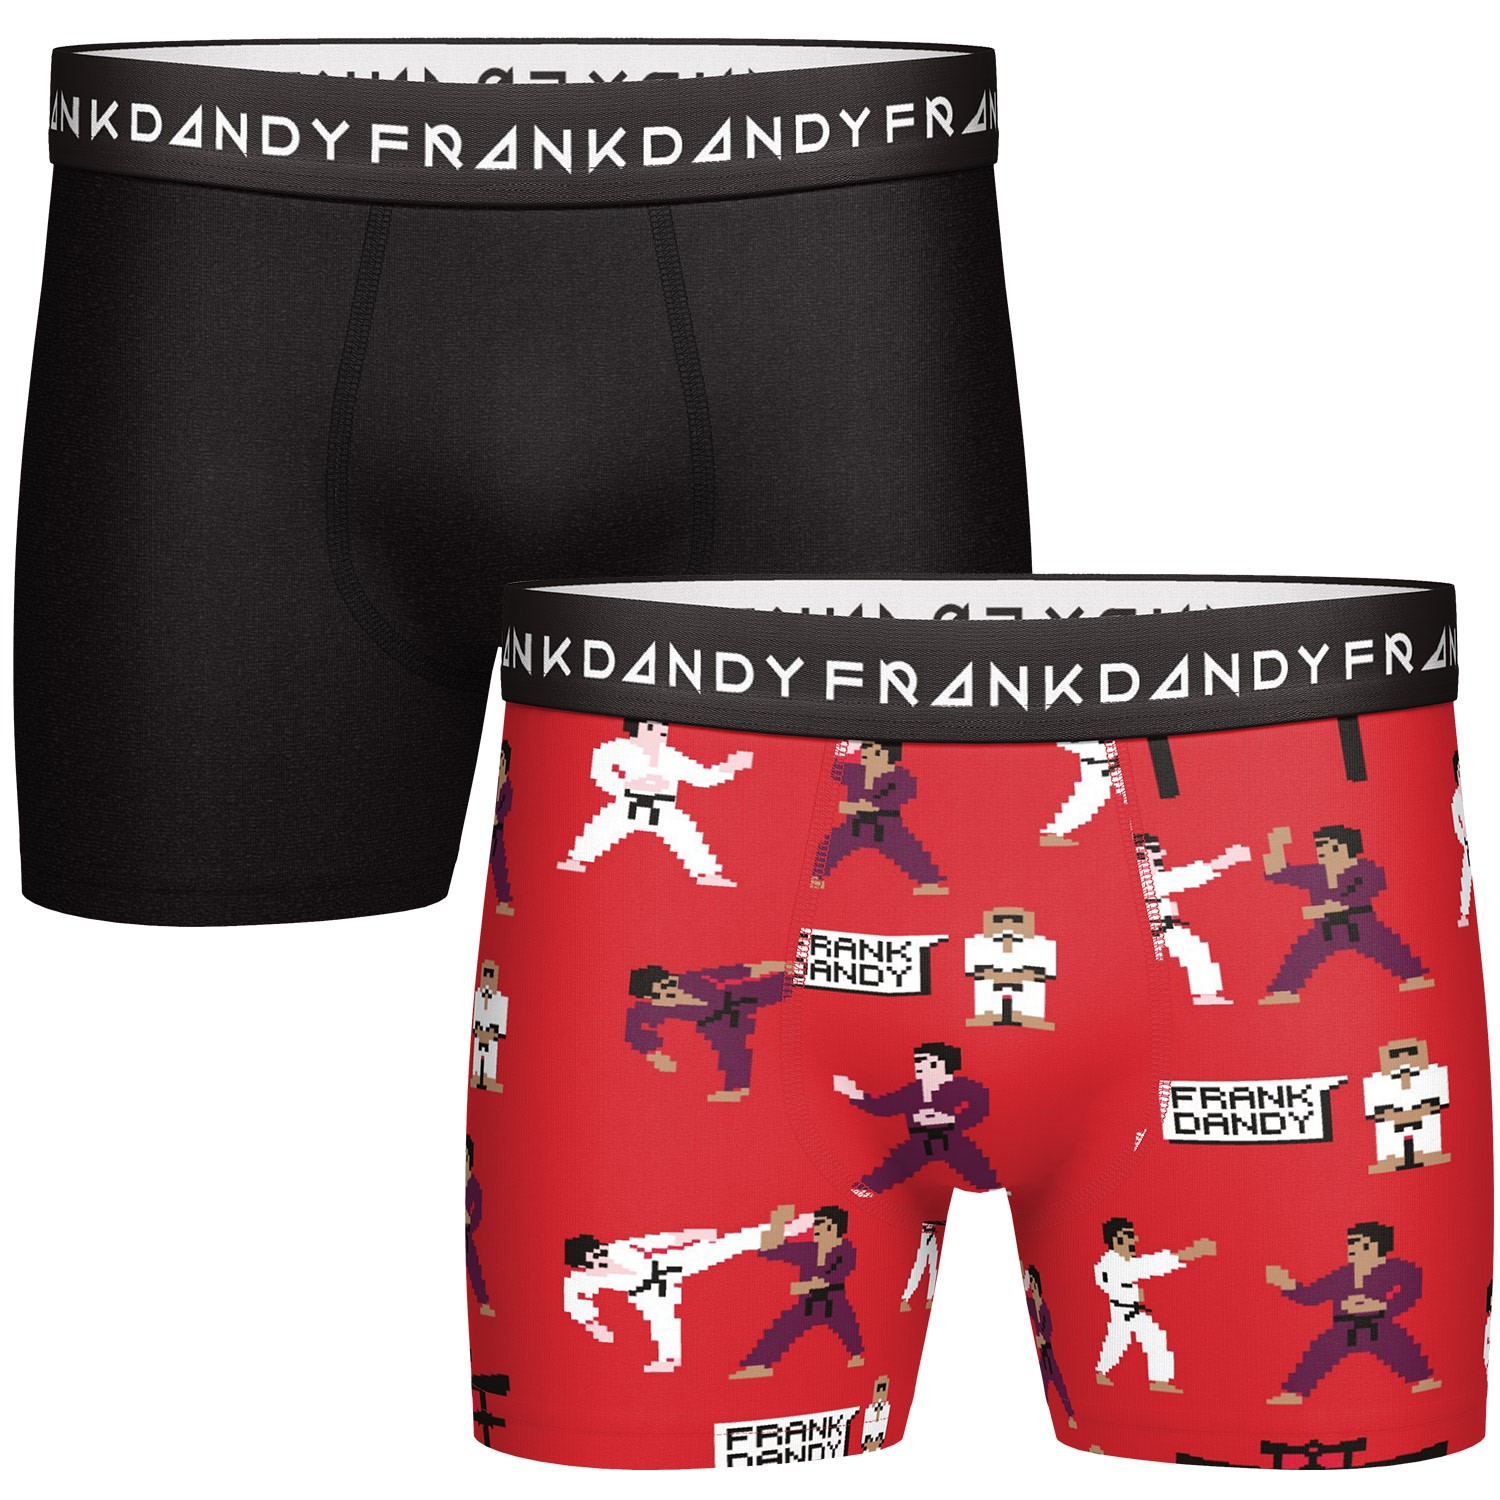 Frank Dandy Pixel Sensei Boxers